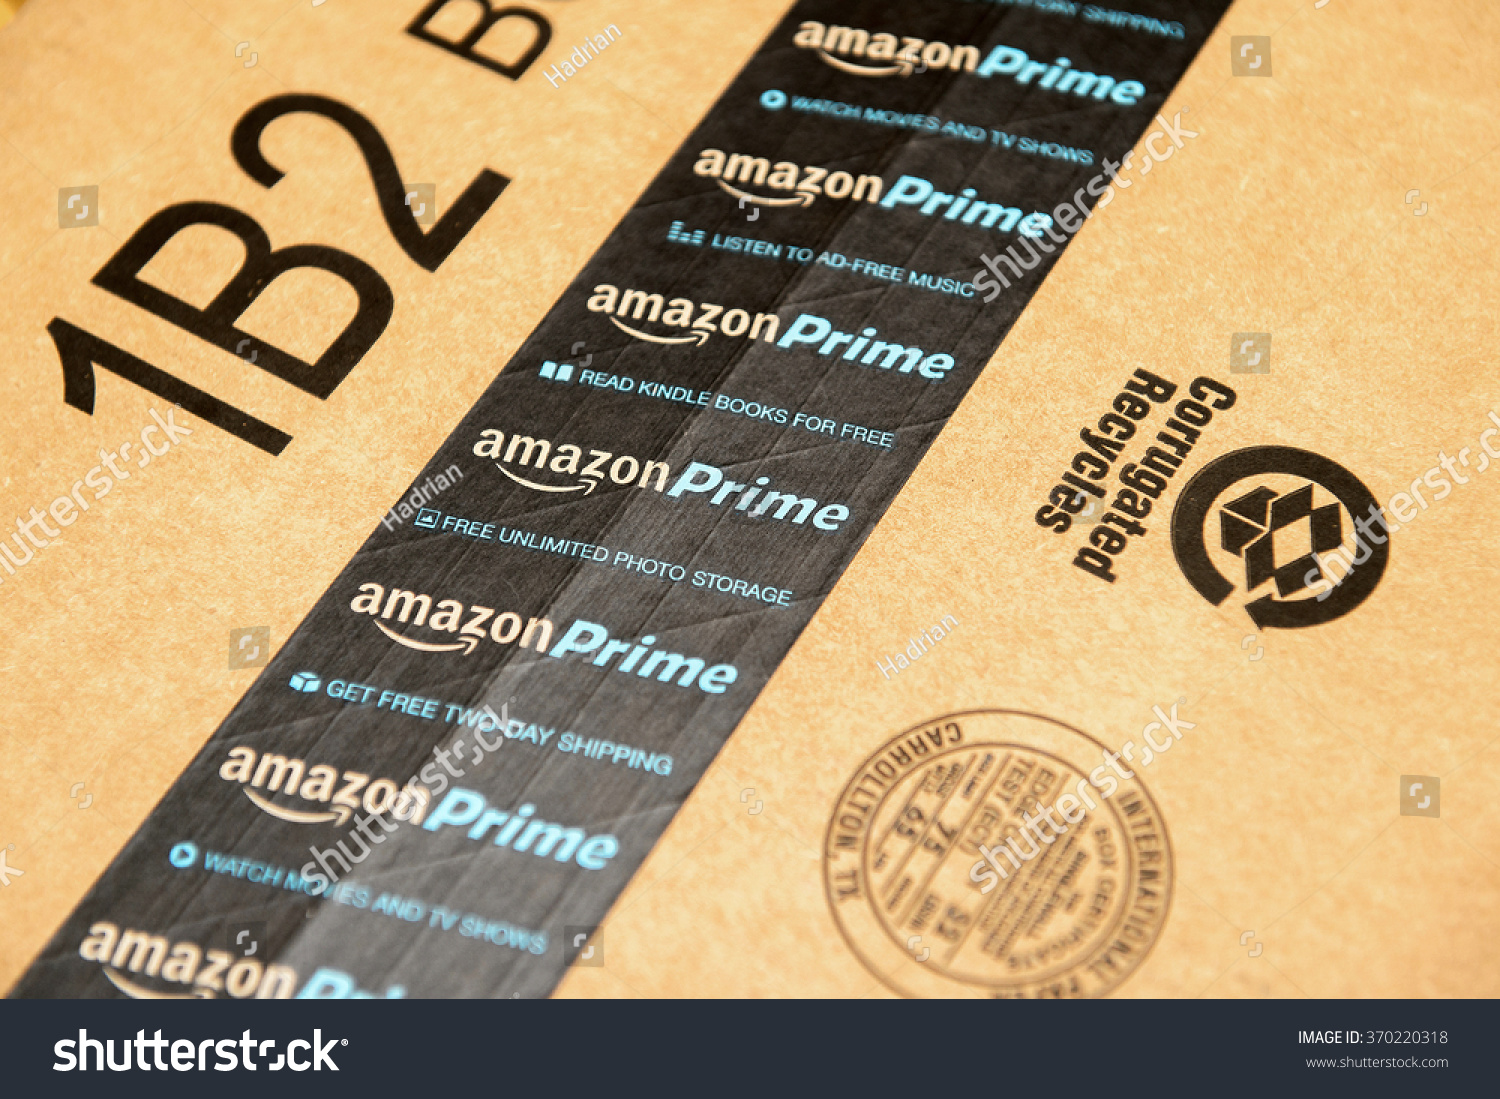 法国巴黎,2016年1月28日:Amazon Prime标识印